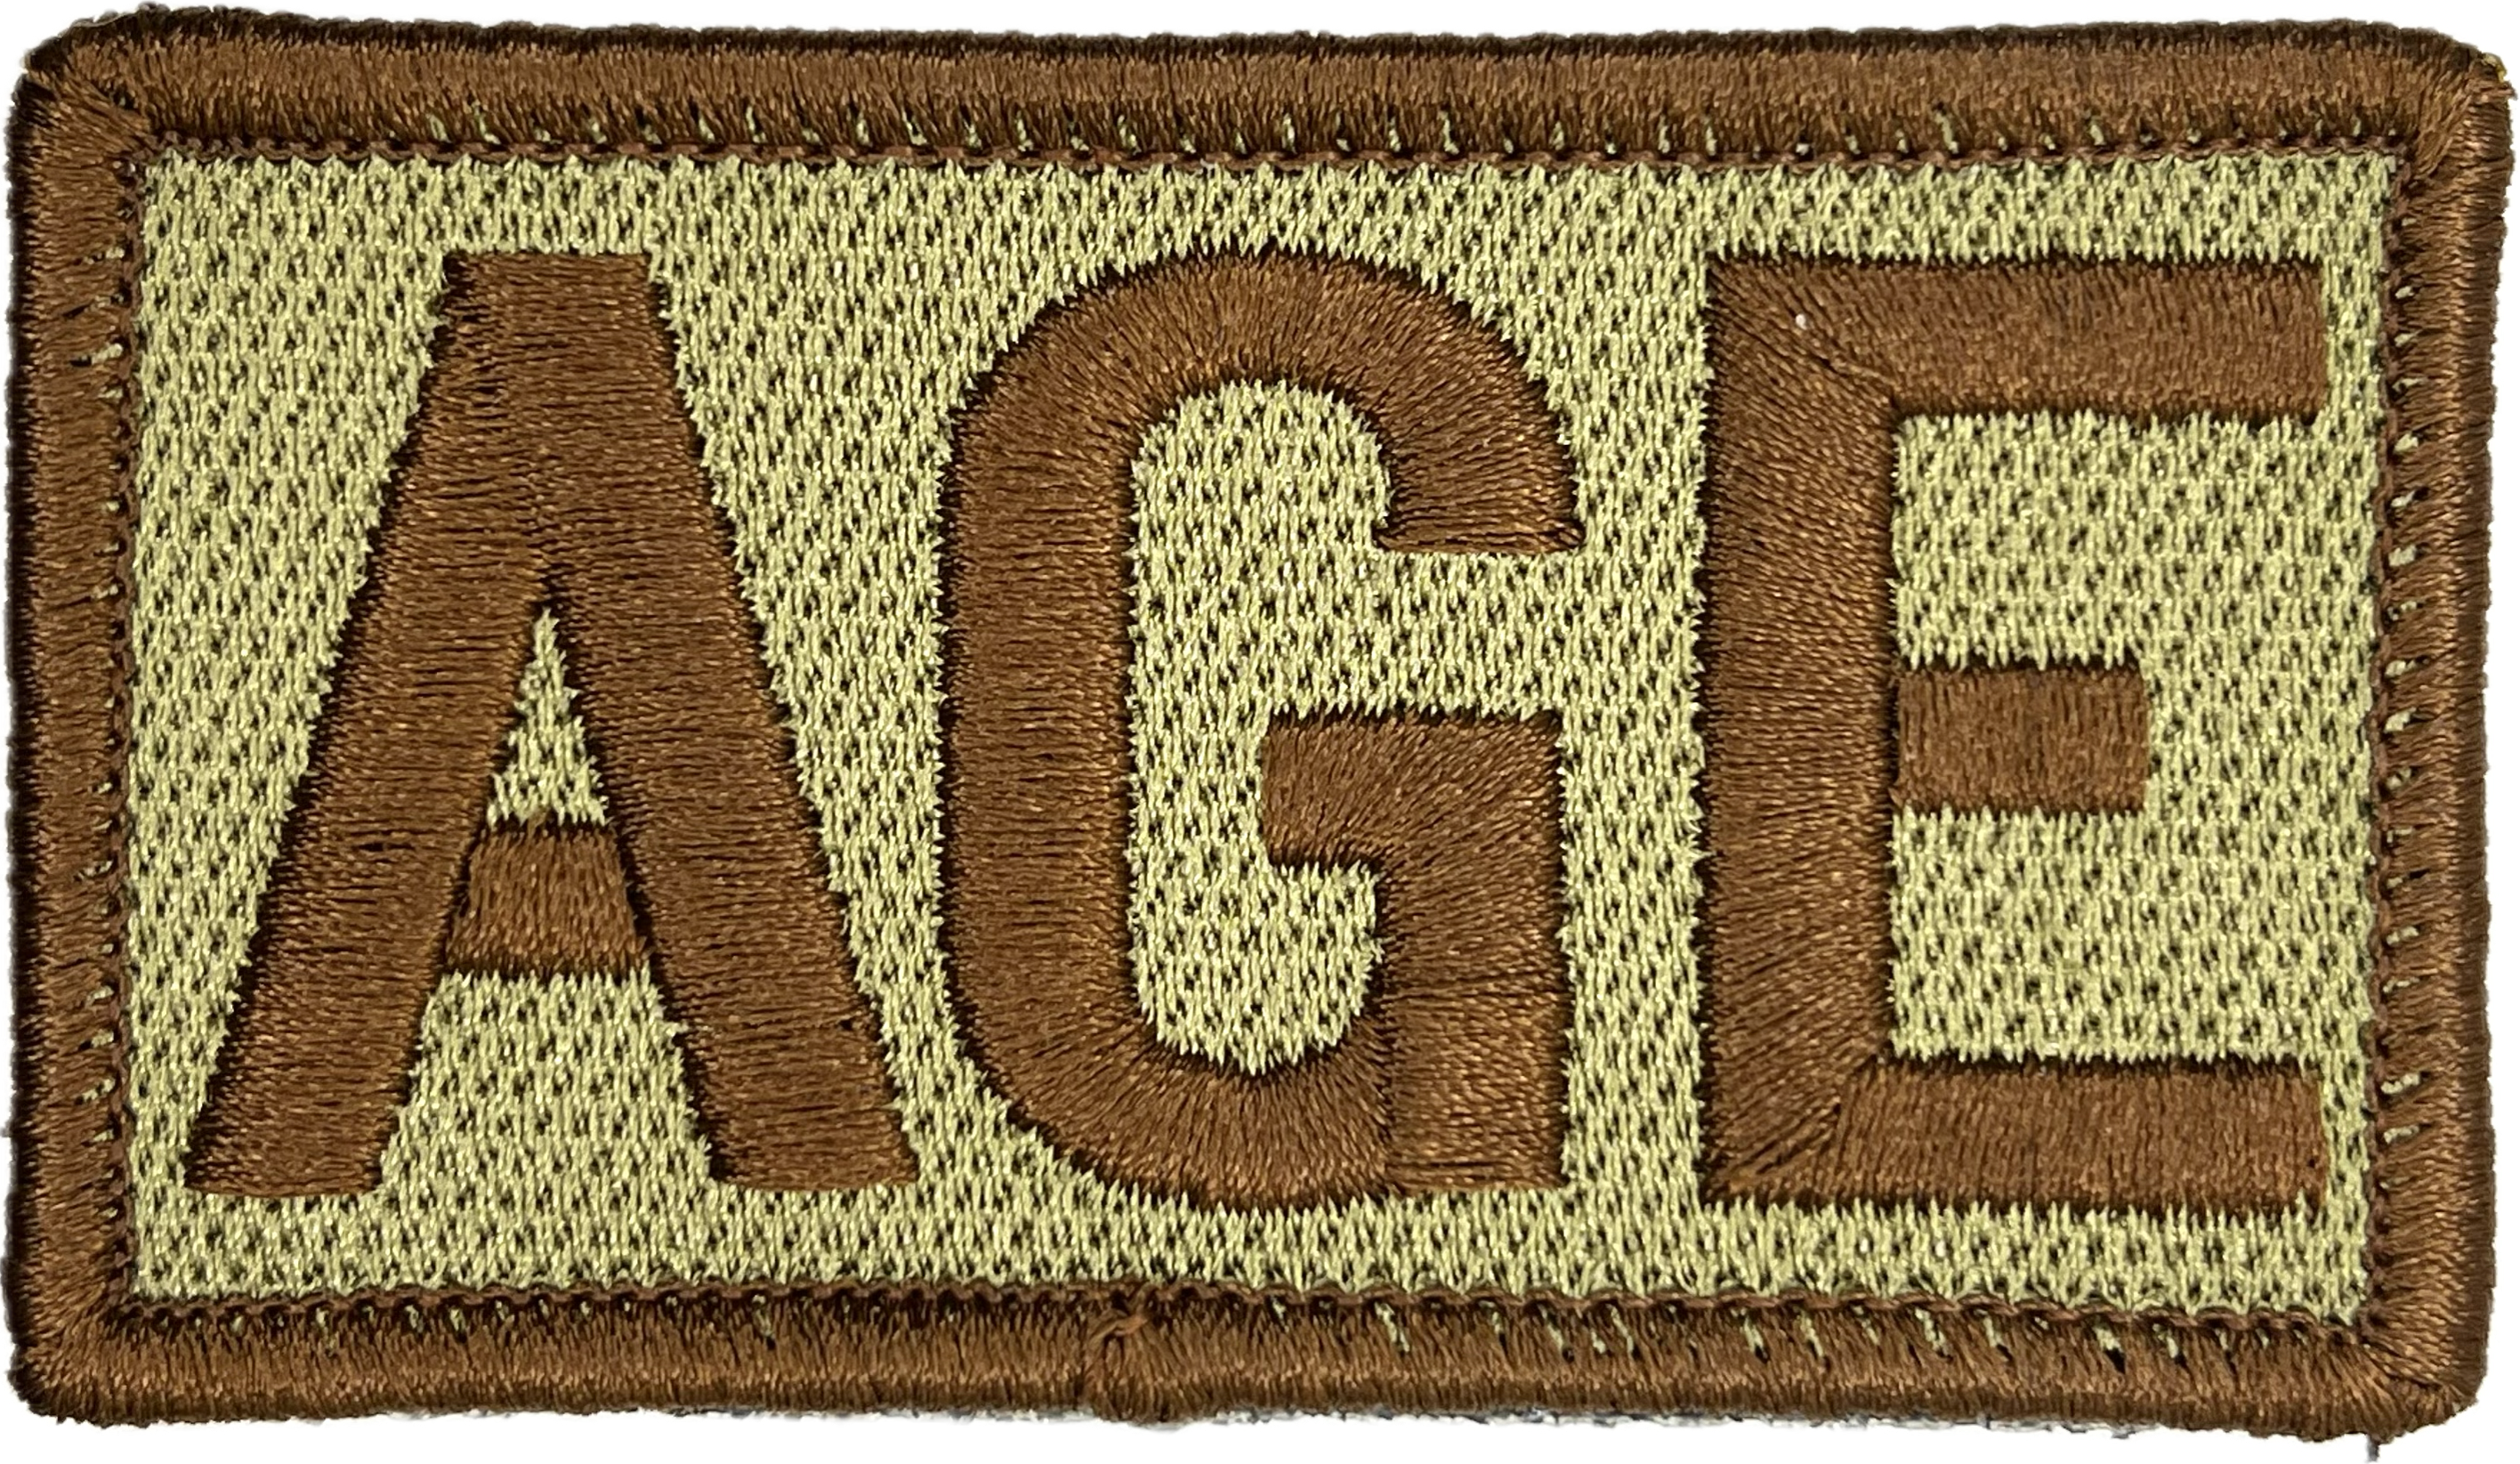 AGE - Duty Identifier Patch